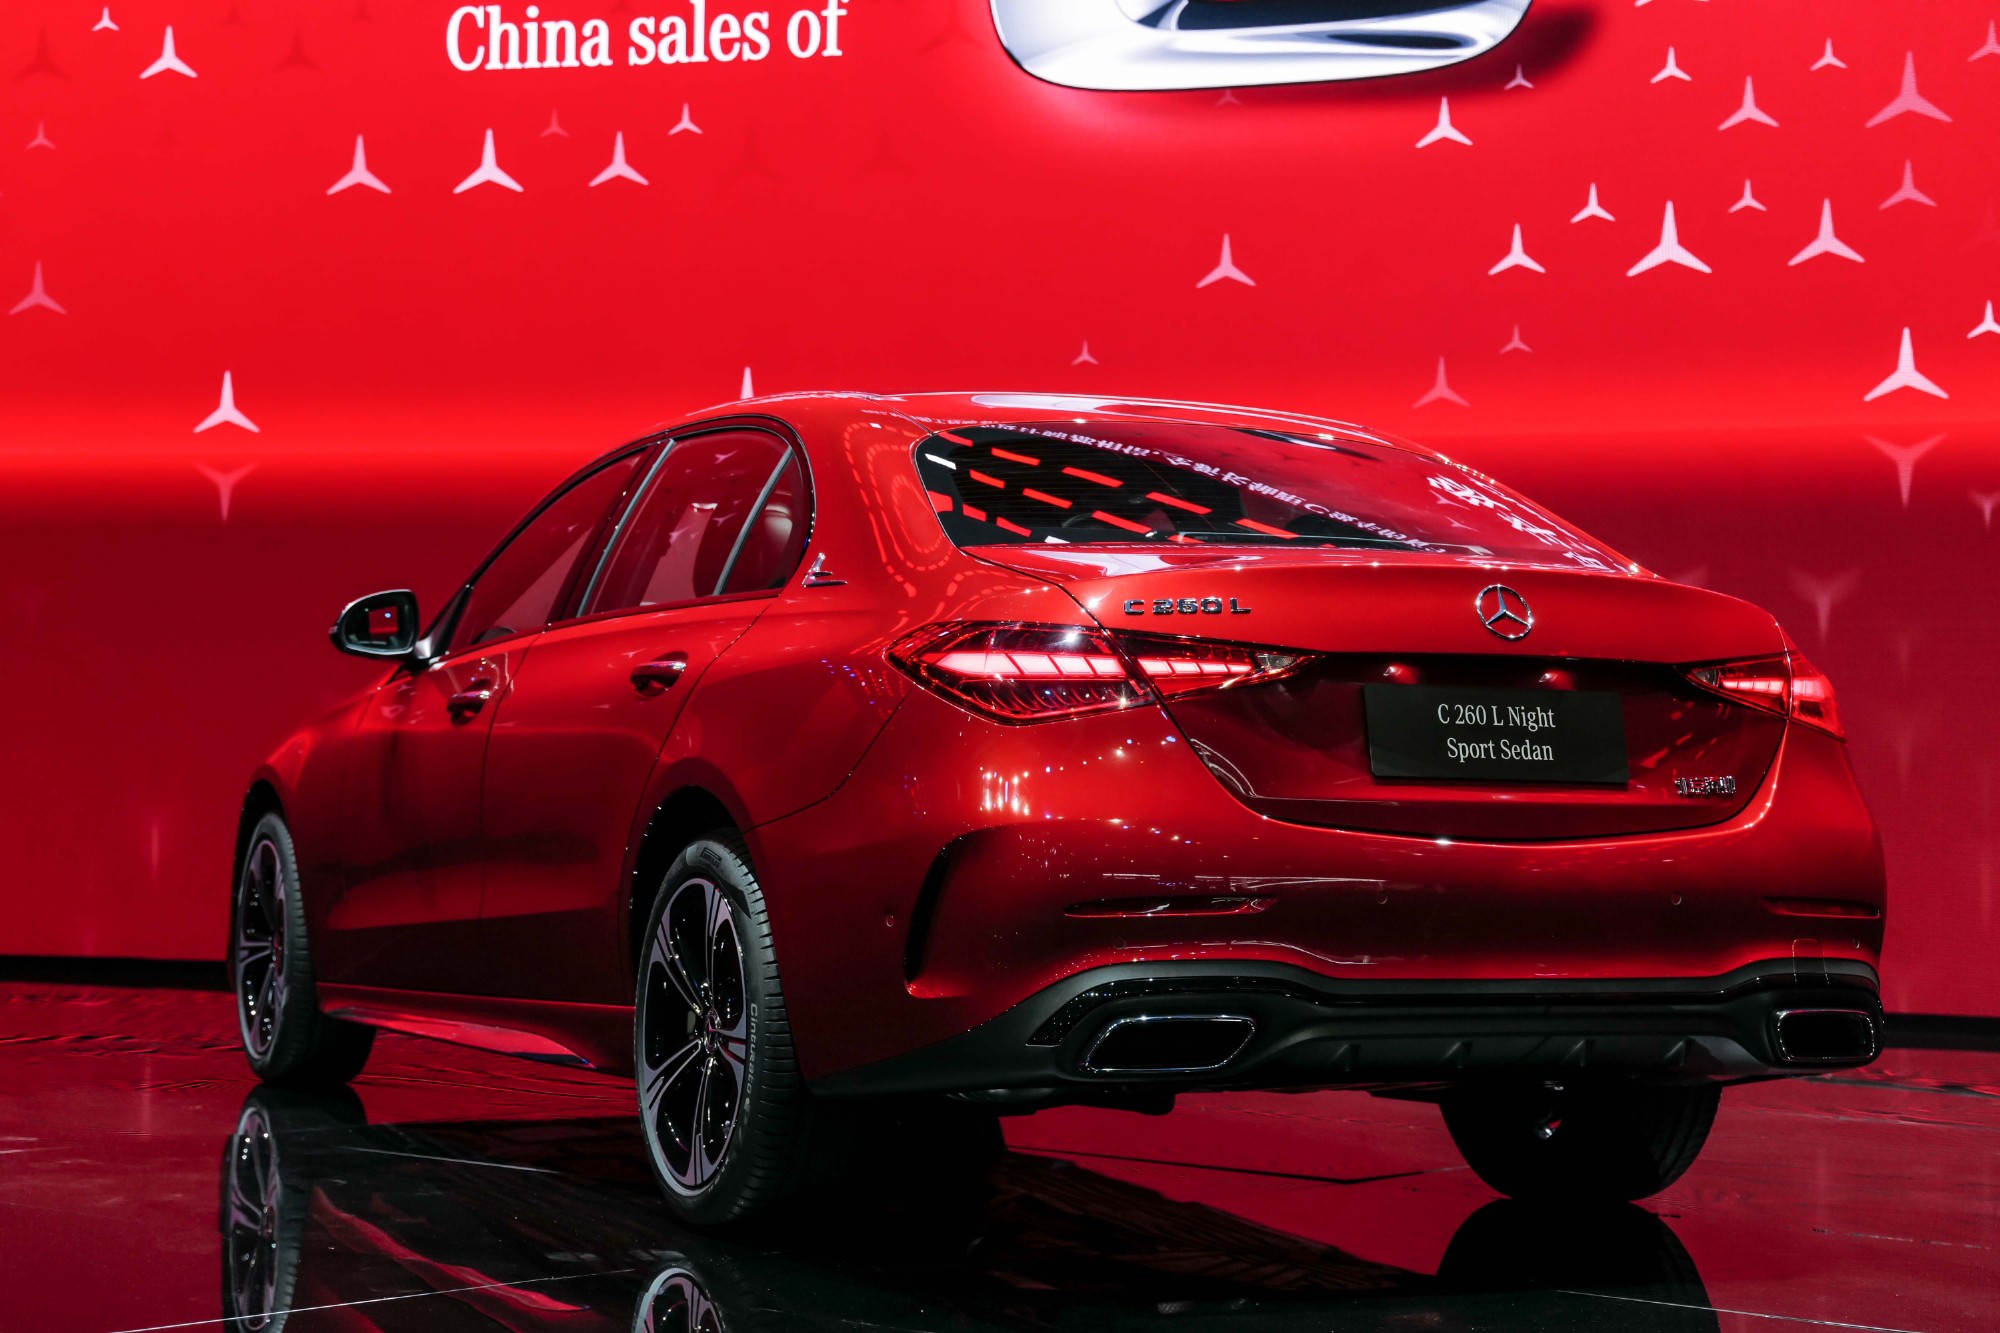 2021上海车展:终于来了!全新奔驰c级长轴正式首发!